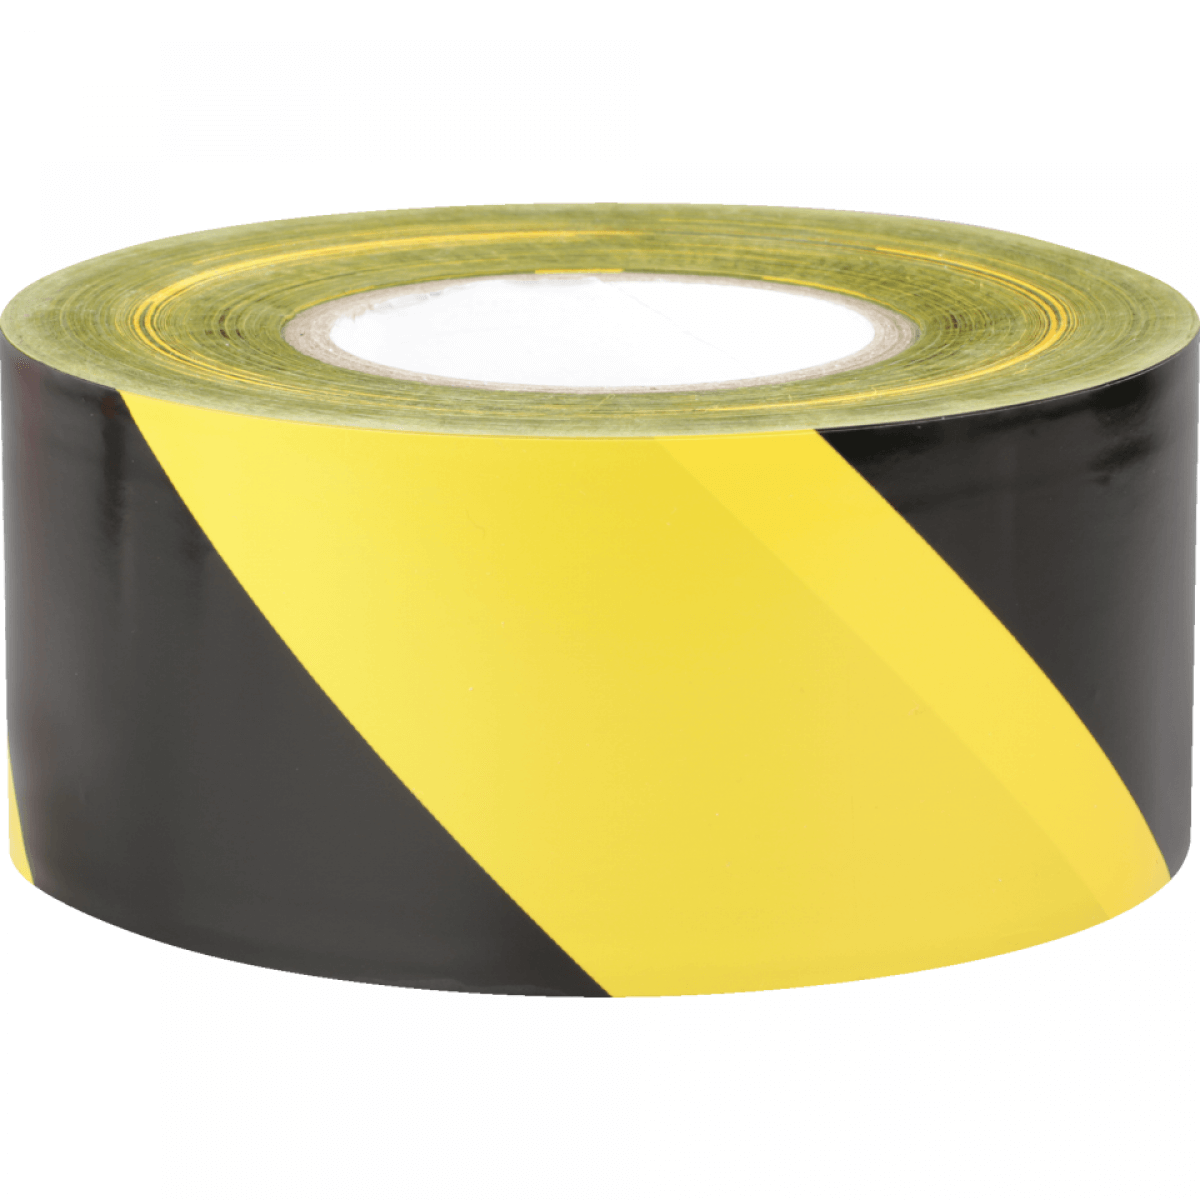 Absperrband Basic, gelb/schwarz schraffiert, Polyethylen, 75mm